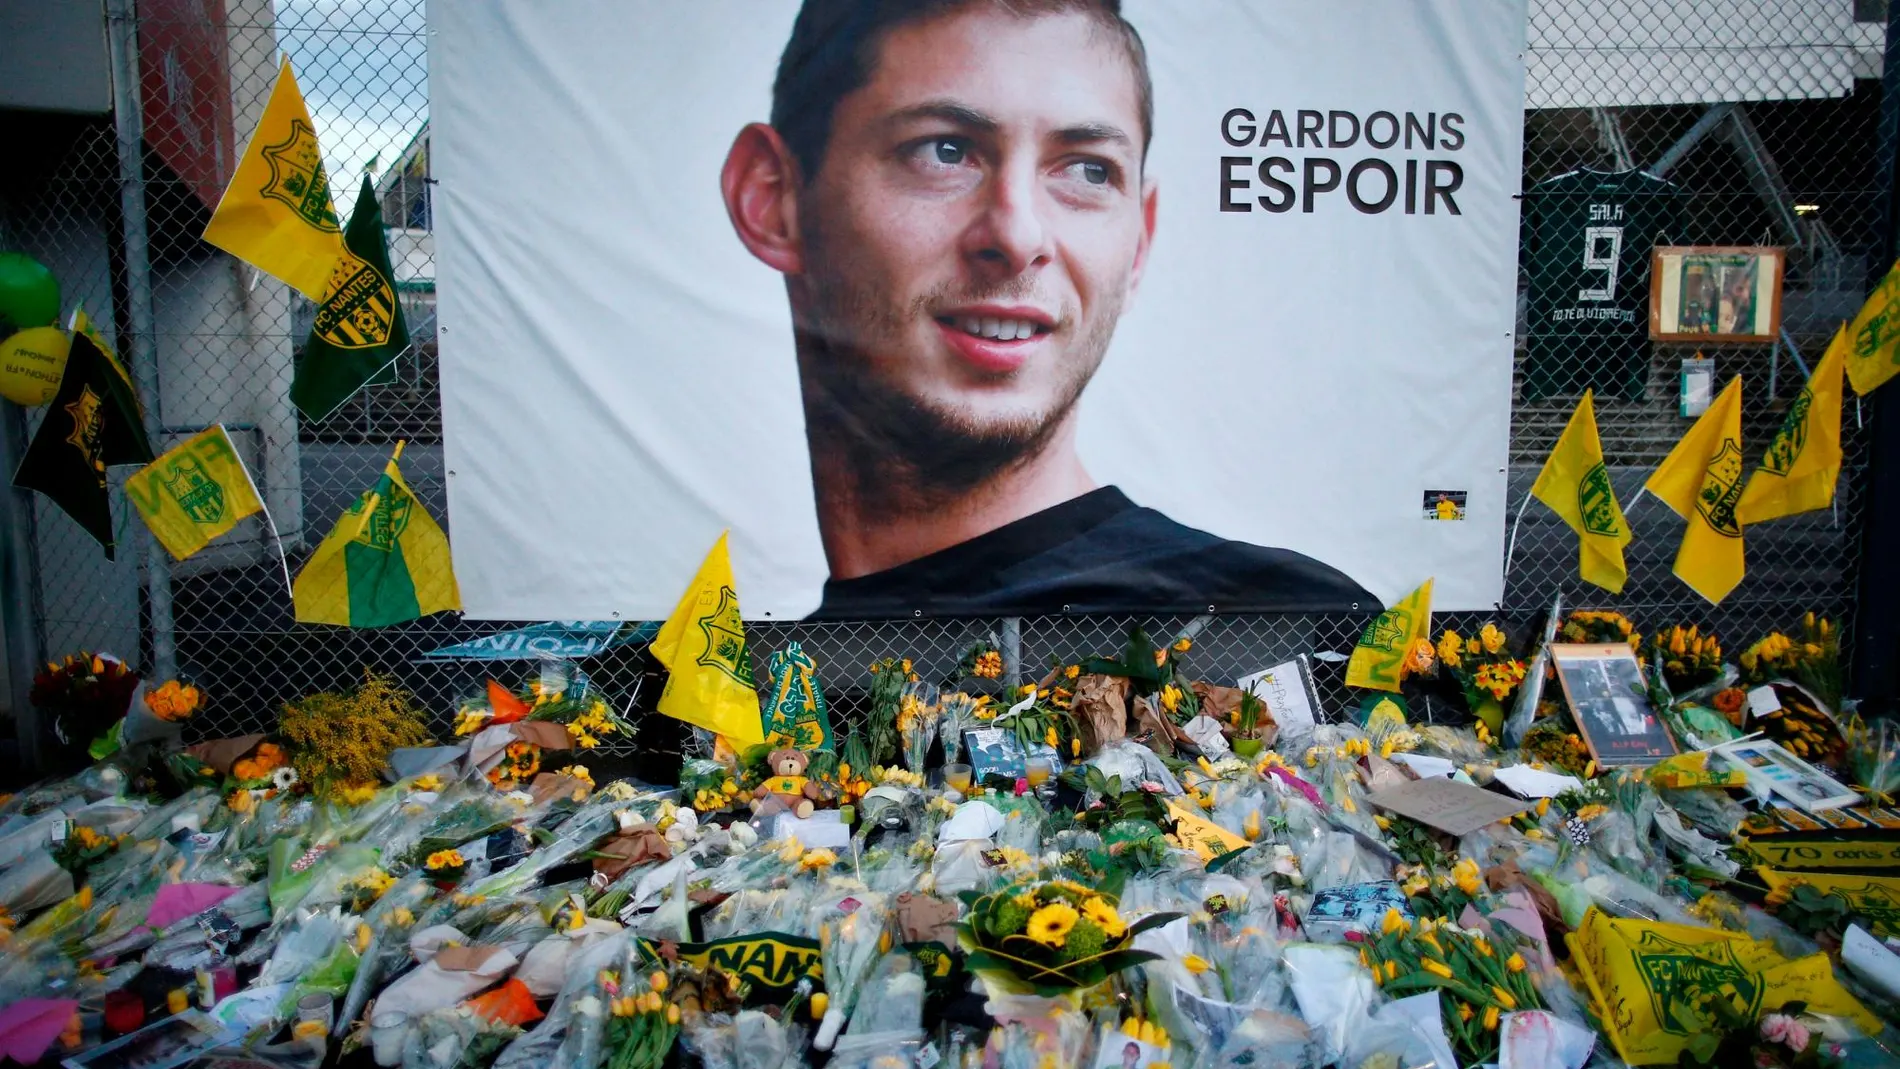 El cuerpo del futbolista fue identificado el 7 de febrero, 18 días después de su desaparición